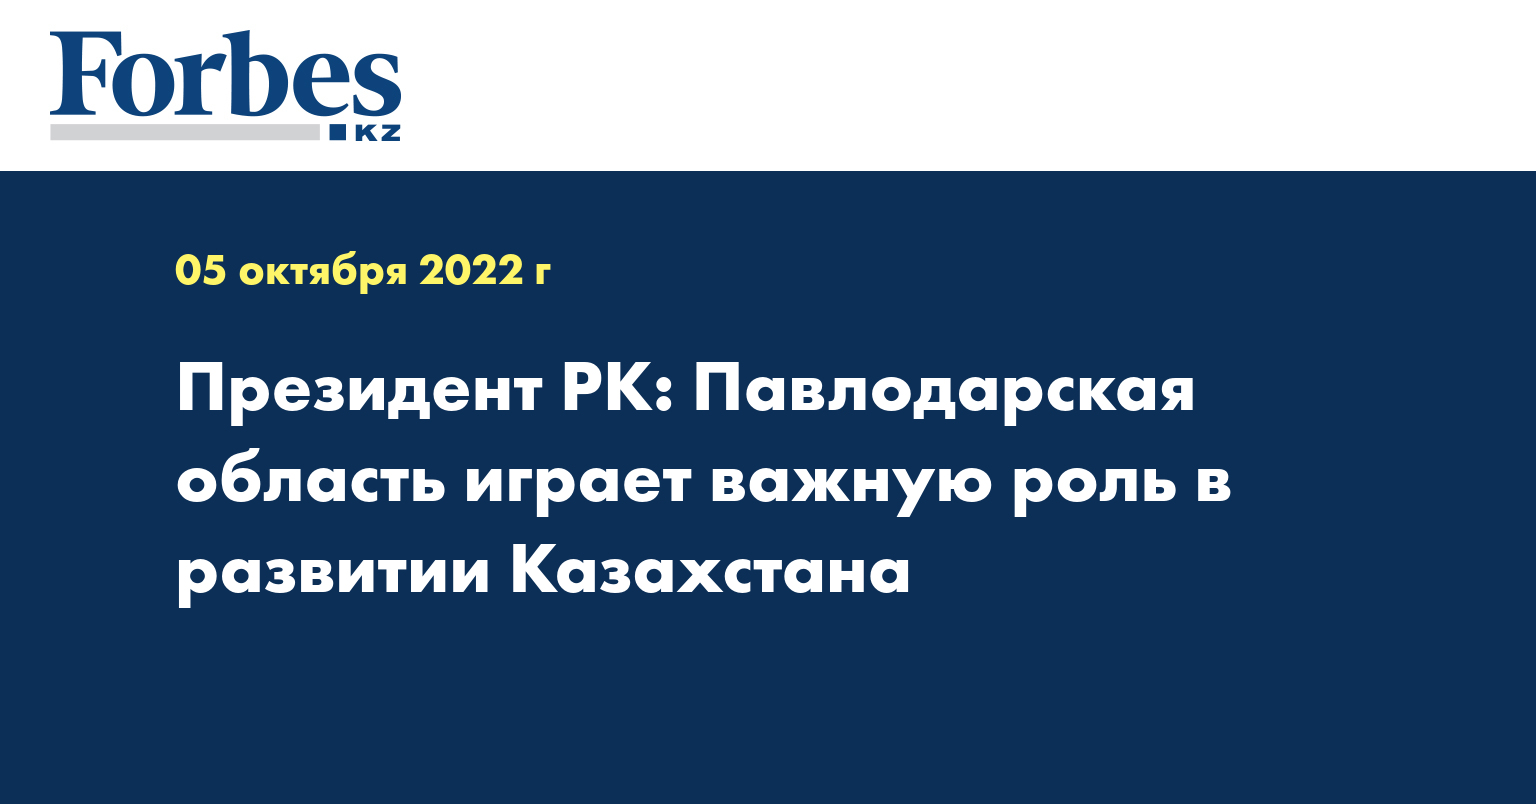 Президент РК: Павлодарская область играет важную роль в развитии Казахстана